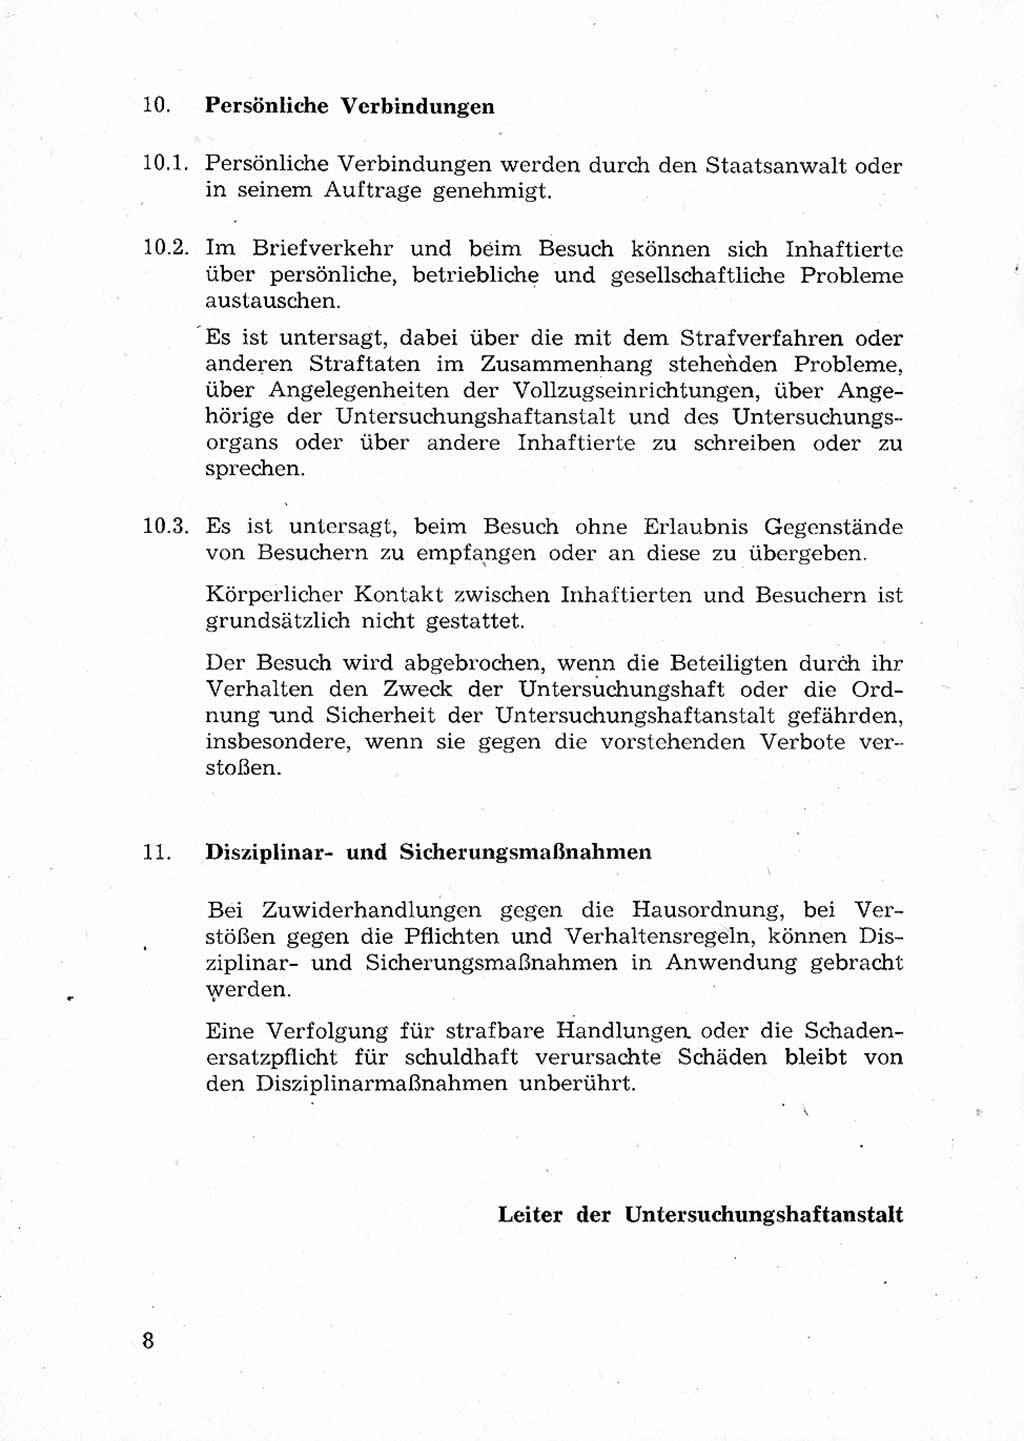 Ordnungs- und Verhaltensregeln (Hausordnung) für Inhaftierte in den Untersuchungshaftanstalten (UHA) [Ministerium für Staatssicherheit (MfS), Deutsche Demokratische Republik (DDR)] 1971, Seite 8 (H.-Ordn. UHA MfS DDR 1971, S. 8)